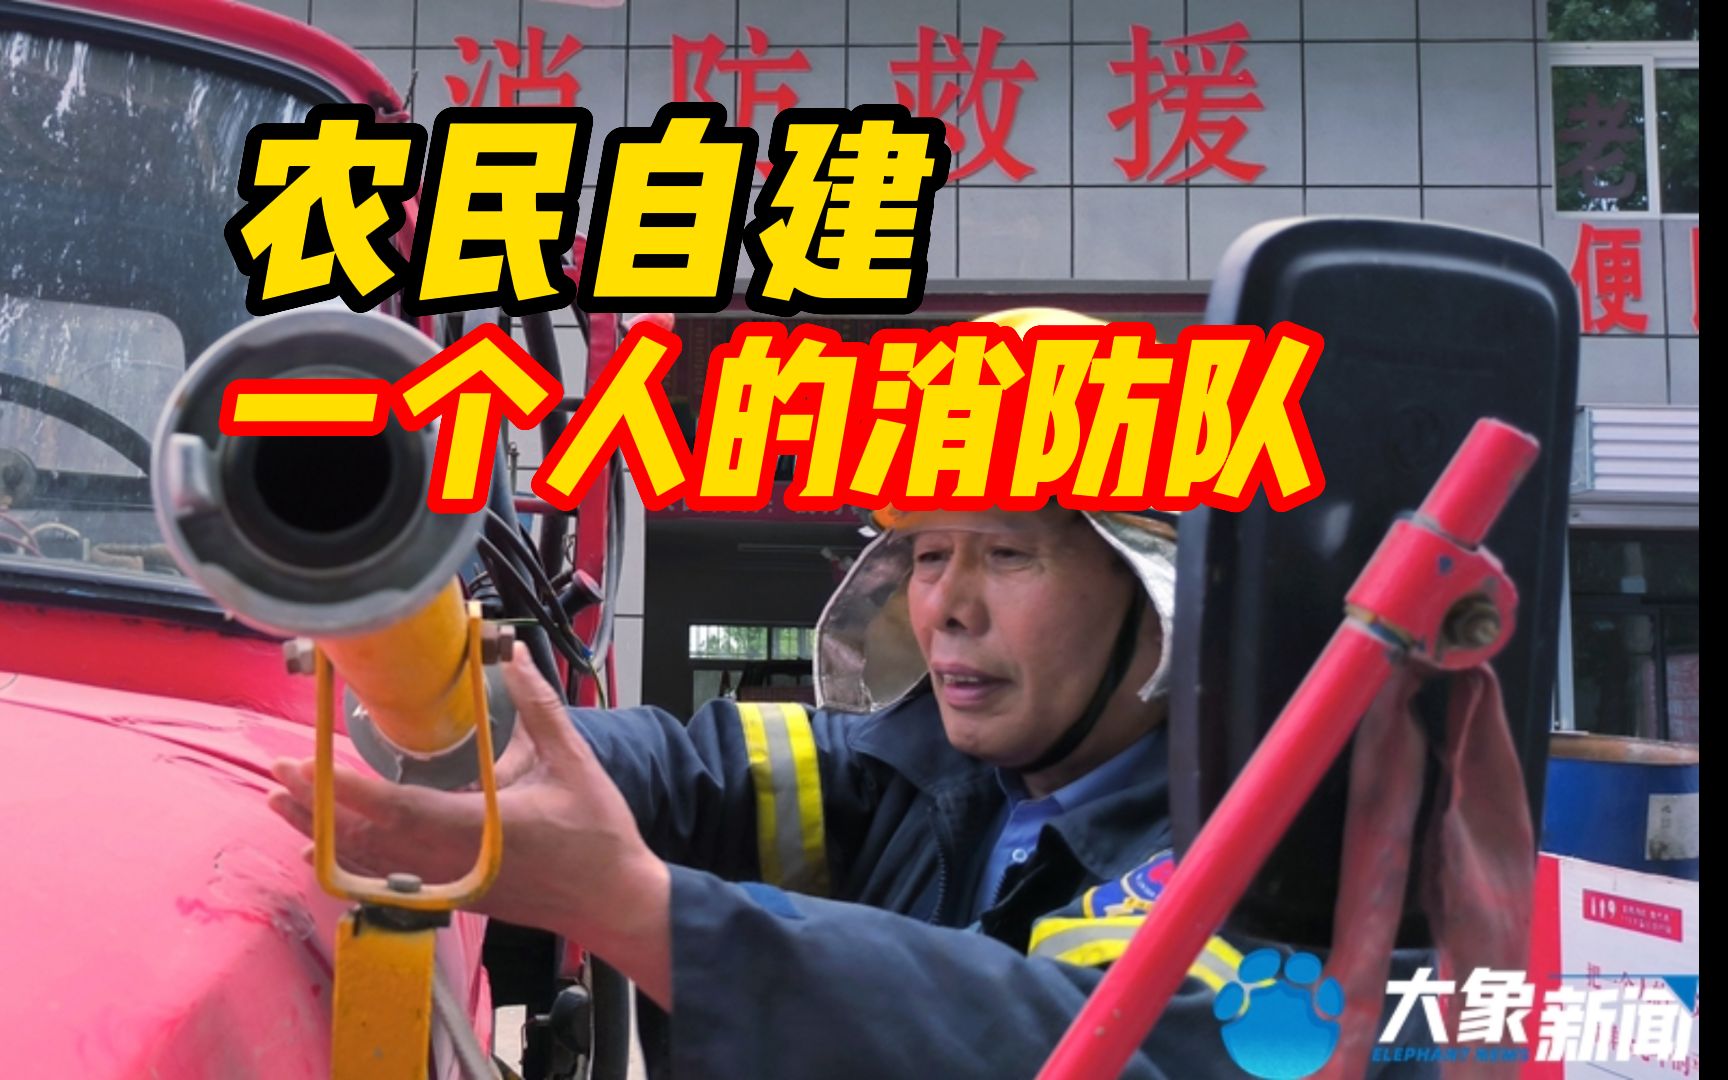 洛阳一农民自建“一个人的消防队” 救助被困人员超800人 入选“中国好人榜”候选名单